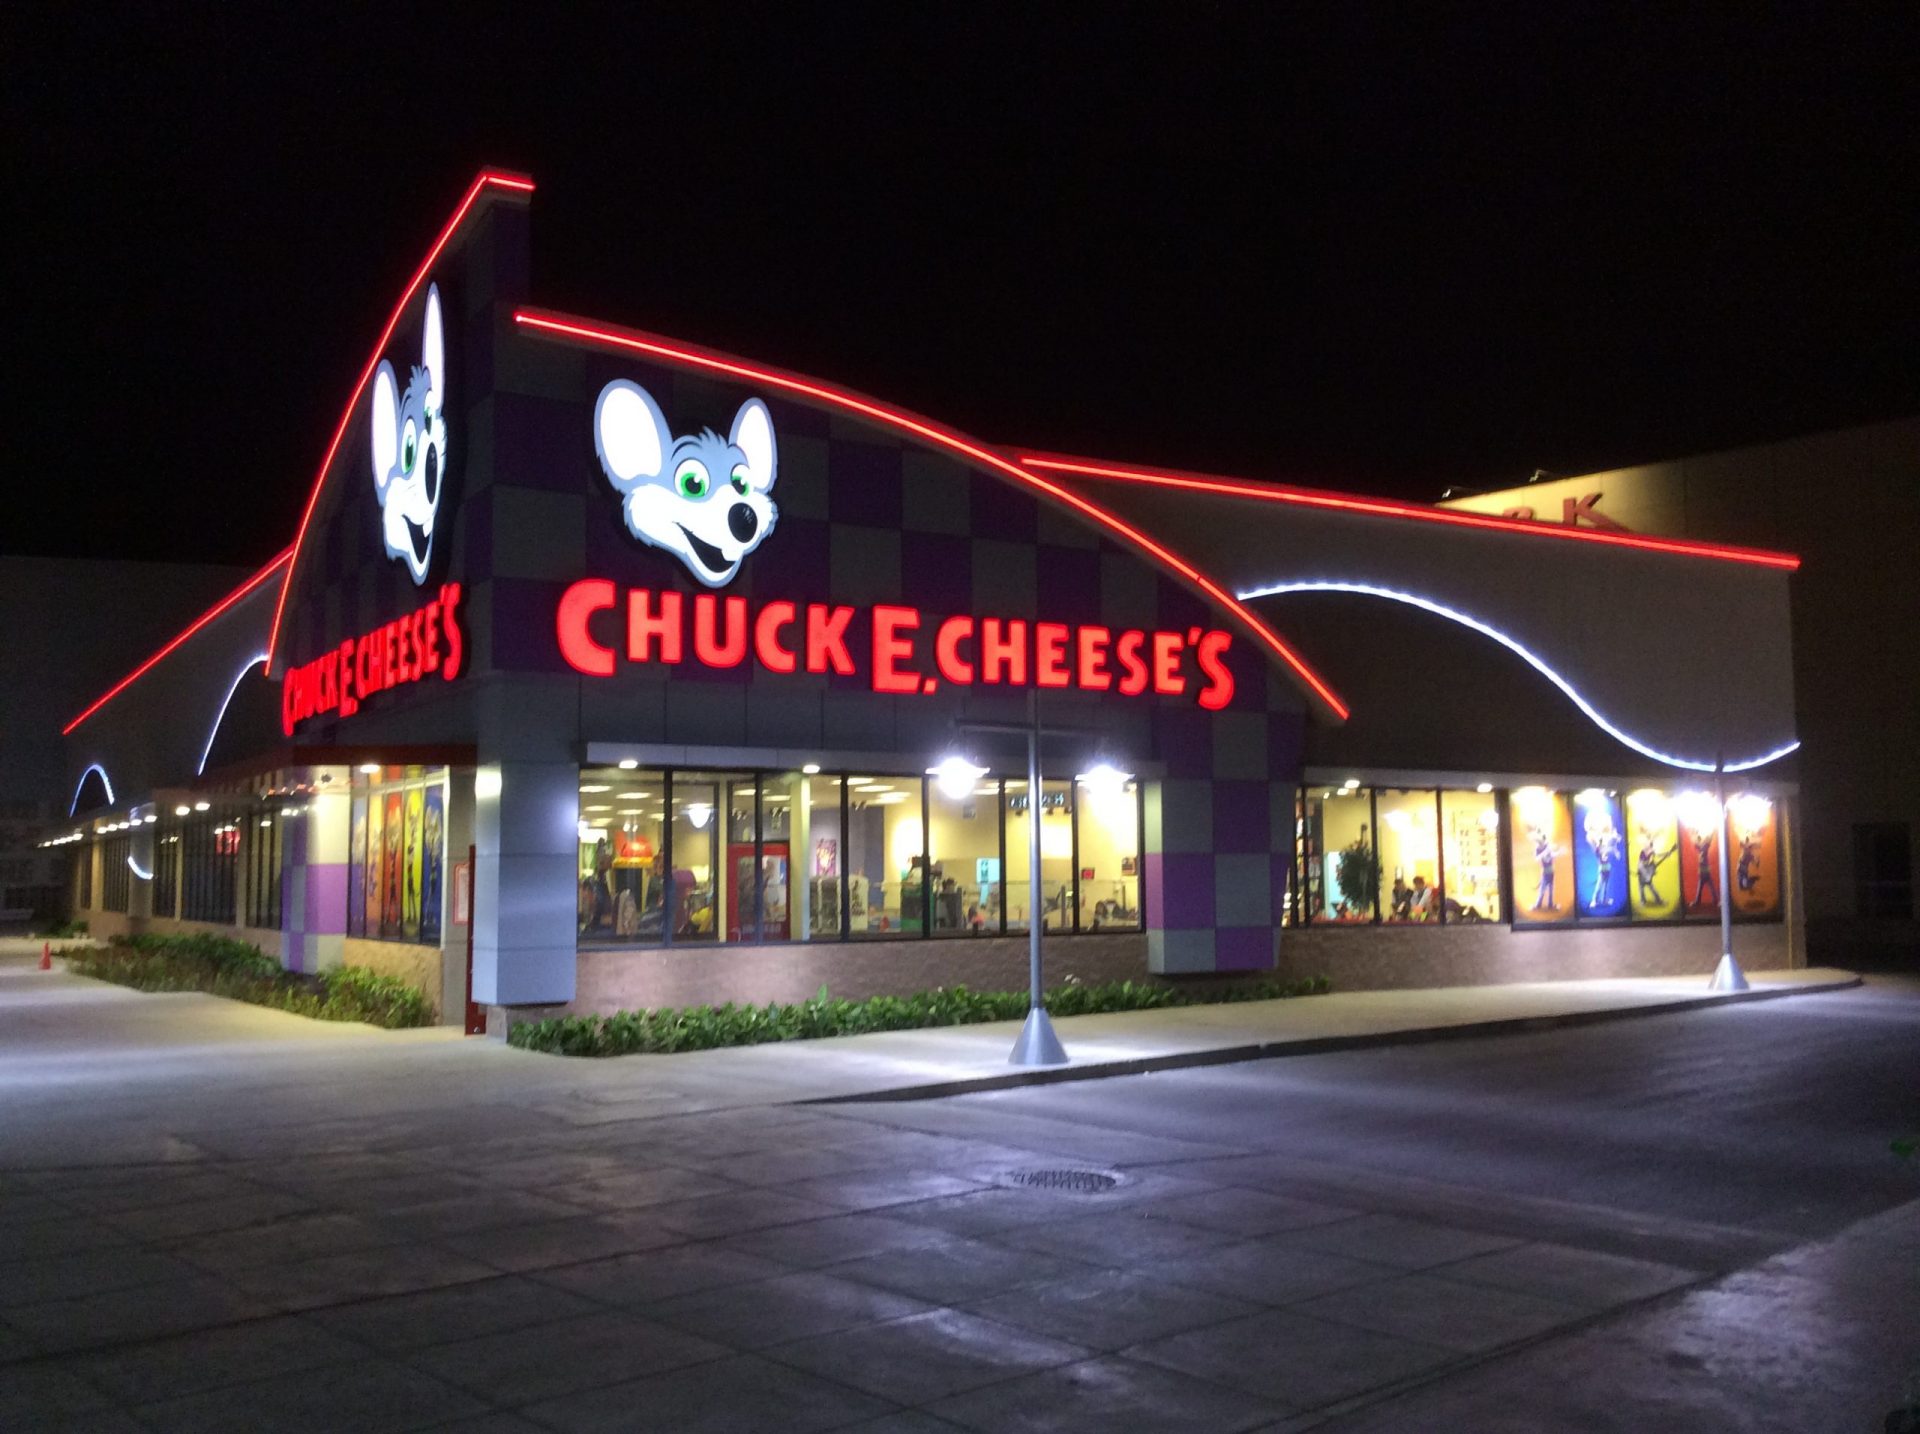  Chuck E. Cheese se declara en bancarrota debido al coronavirus